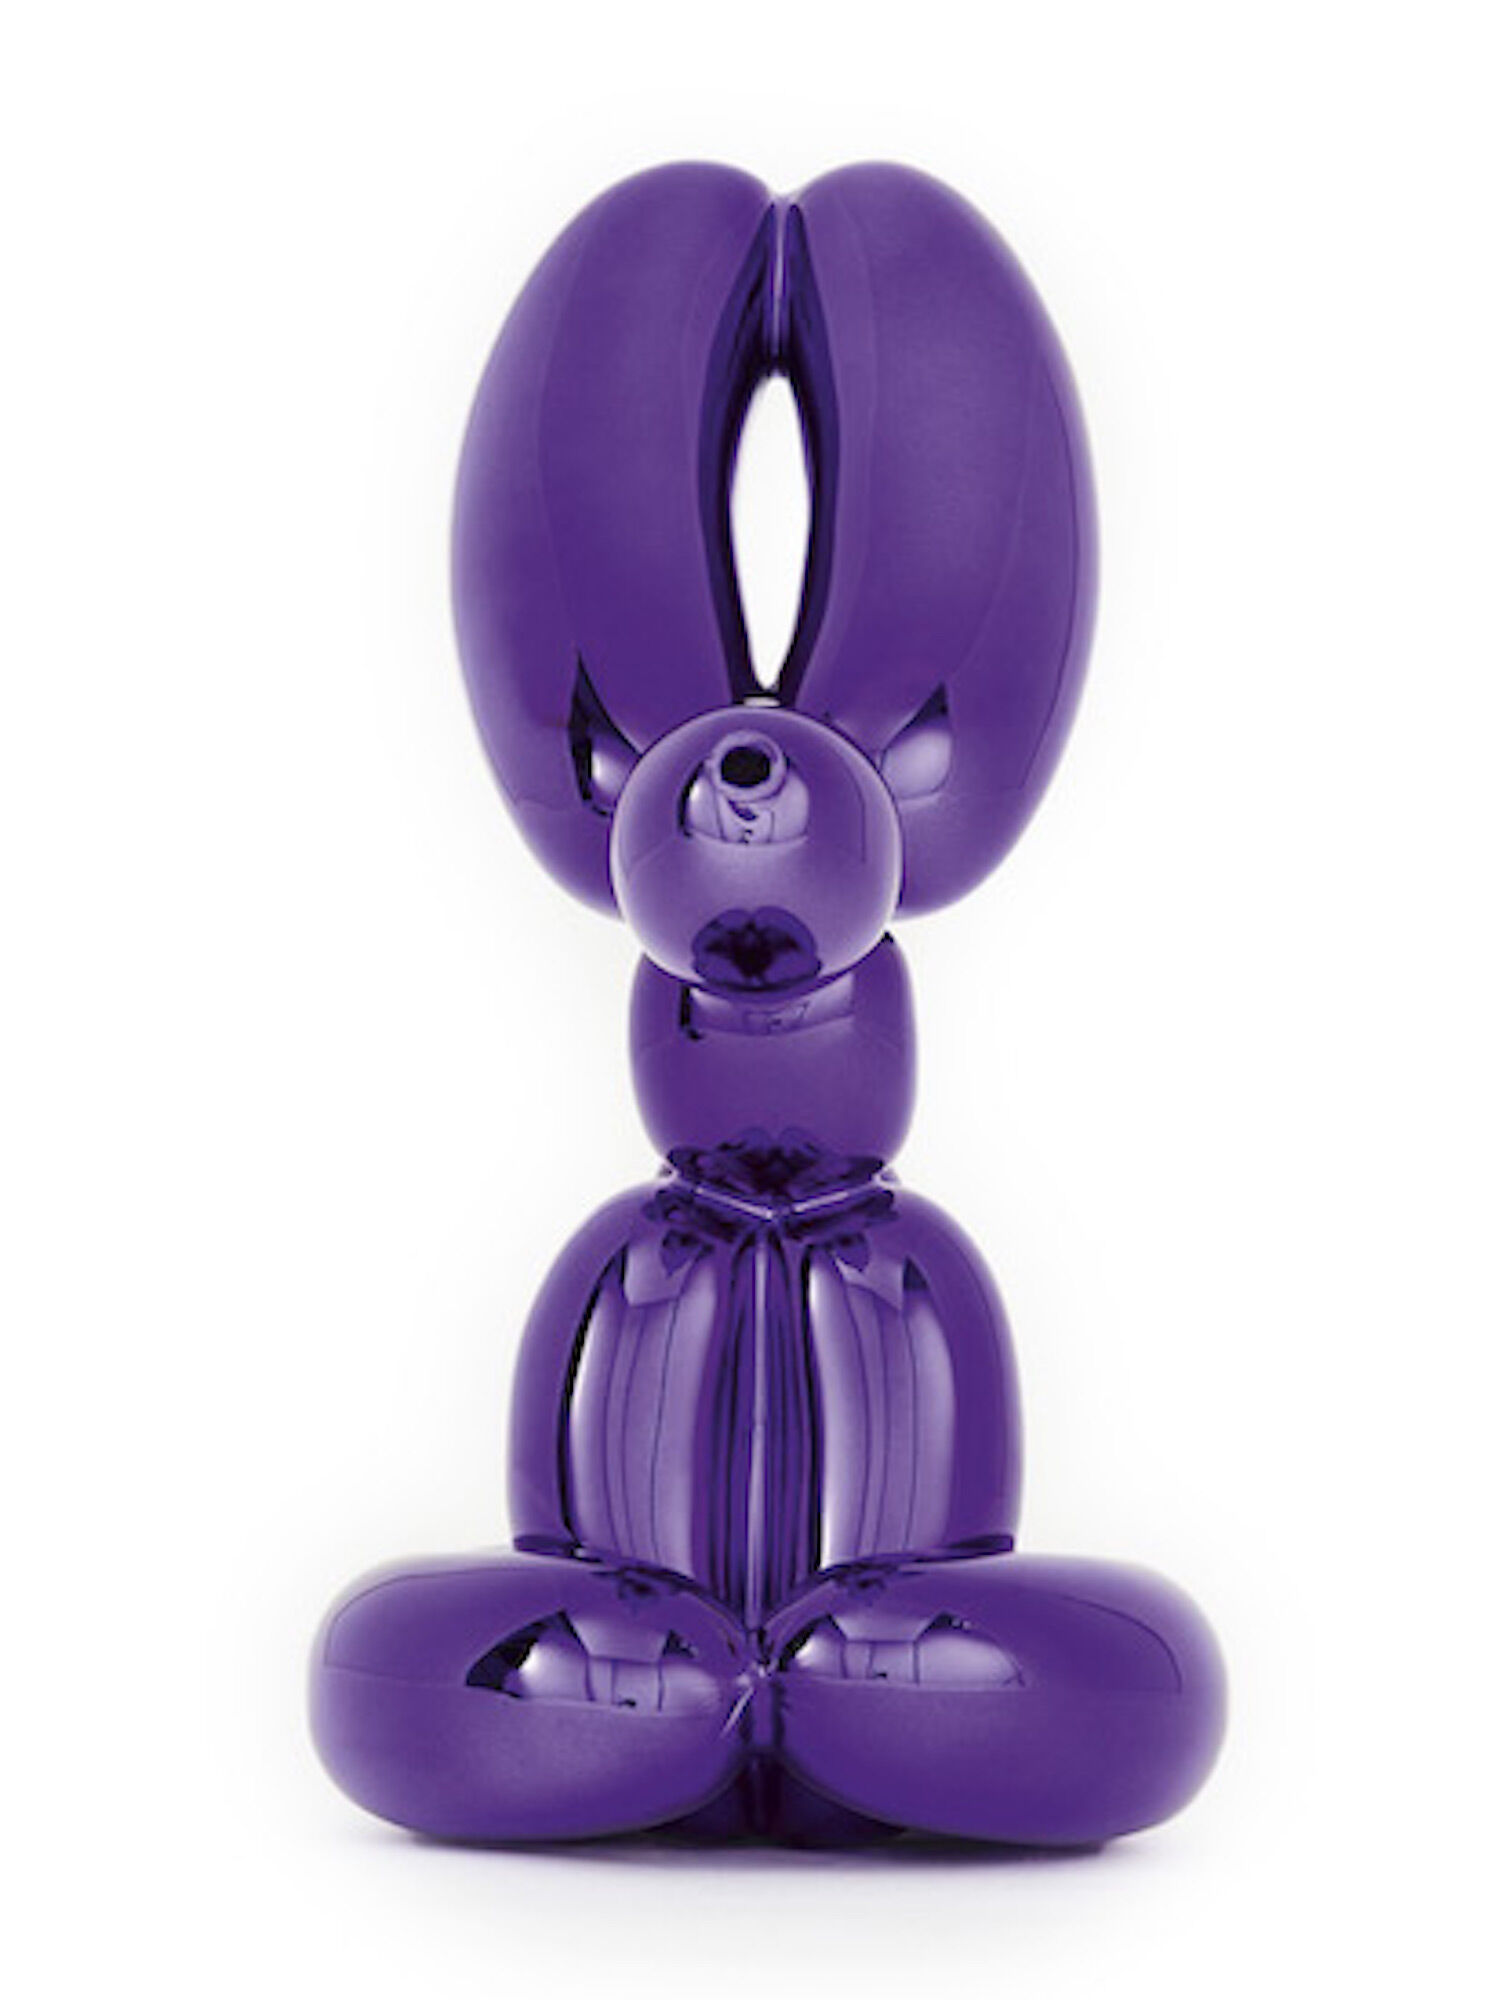 Skulptur "Balloon Rabbit (Violet)" (2019) von Jeff Koons